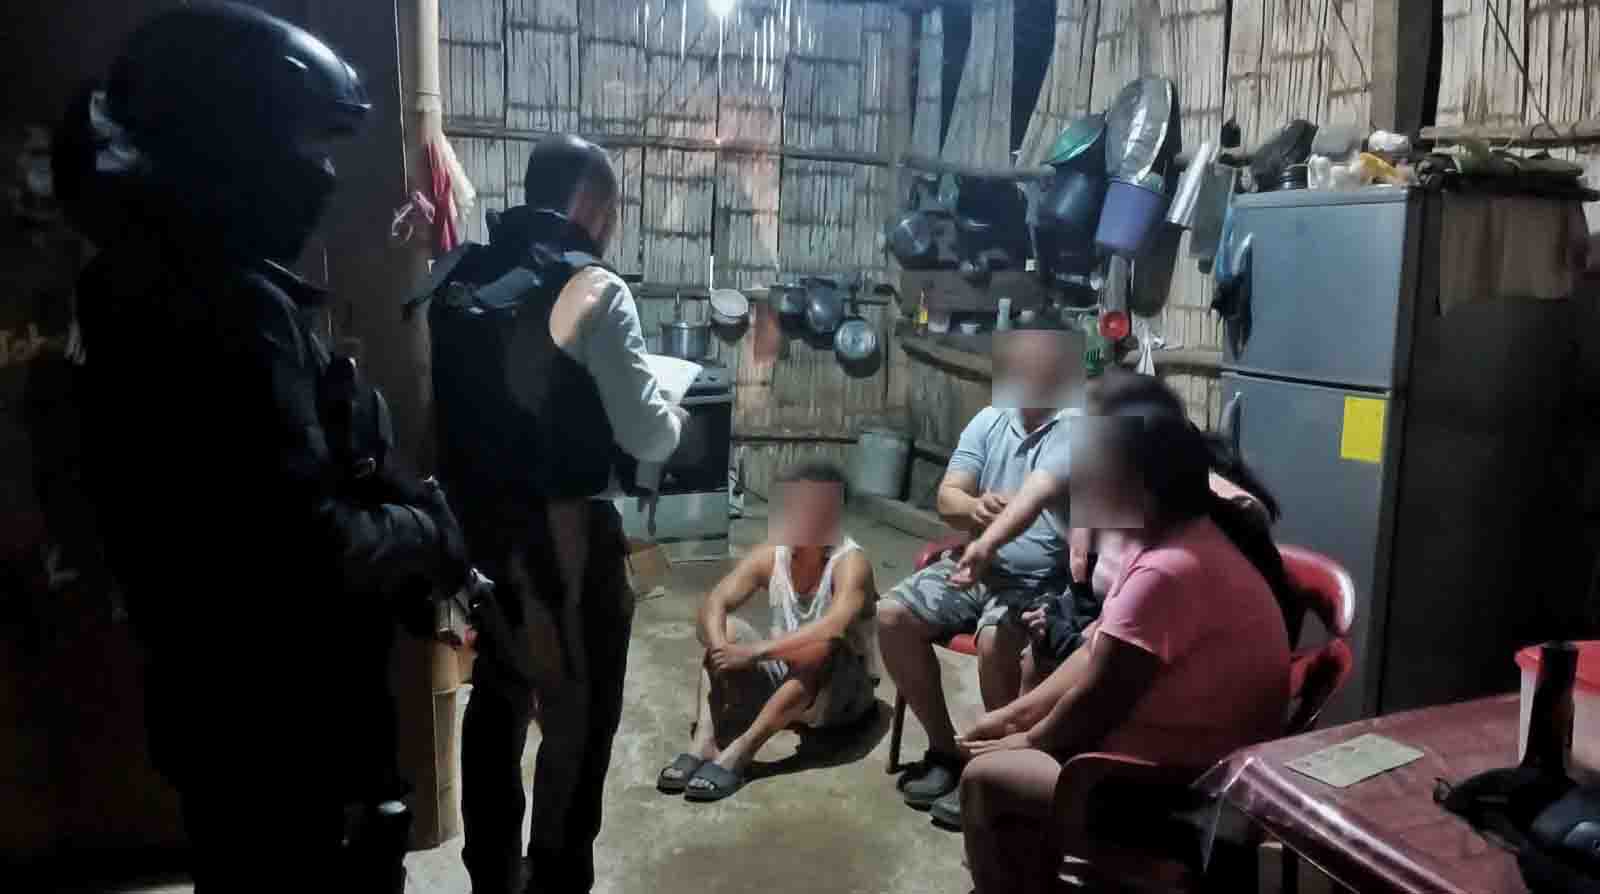 Siete personas fueron detenidas en siete allanamientos ejecutados en Paján, provincia de Manabí. Foto: Fiscalía